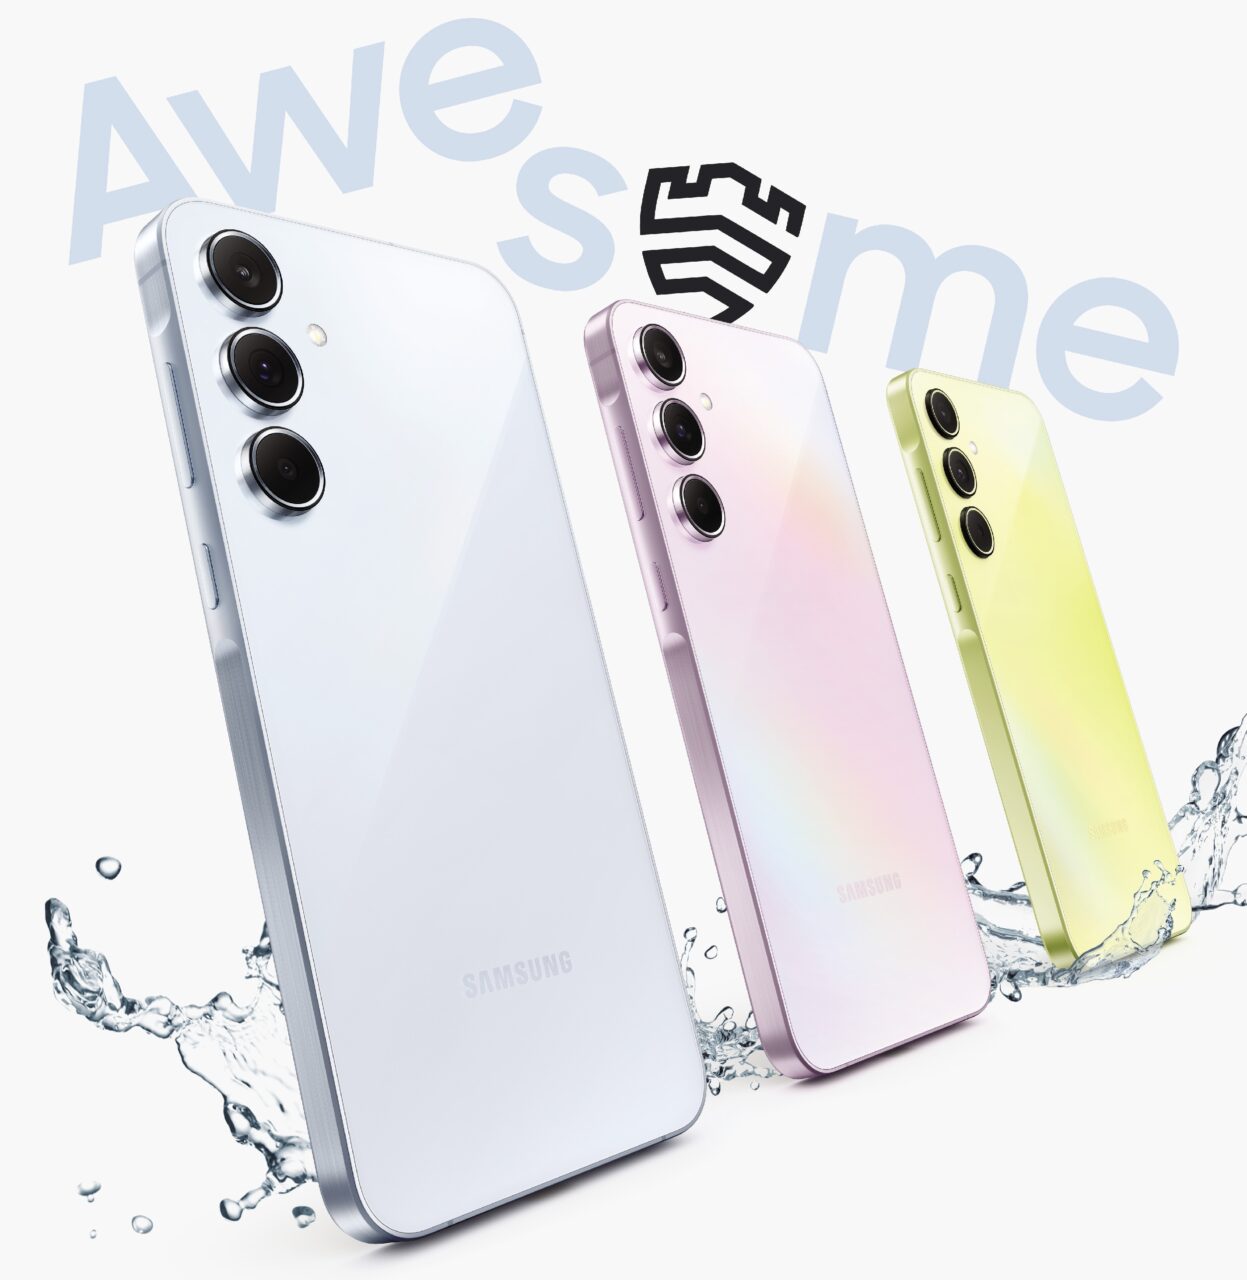 Cztery smartfony Samsung ułożone w linii po skosie, z kolorami od białego poprzez różowe pożółkłe, z tyłu napis "Awesome" i splash wody wokół urządzeń.